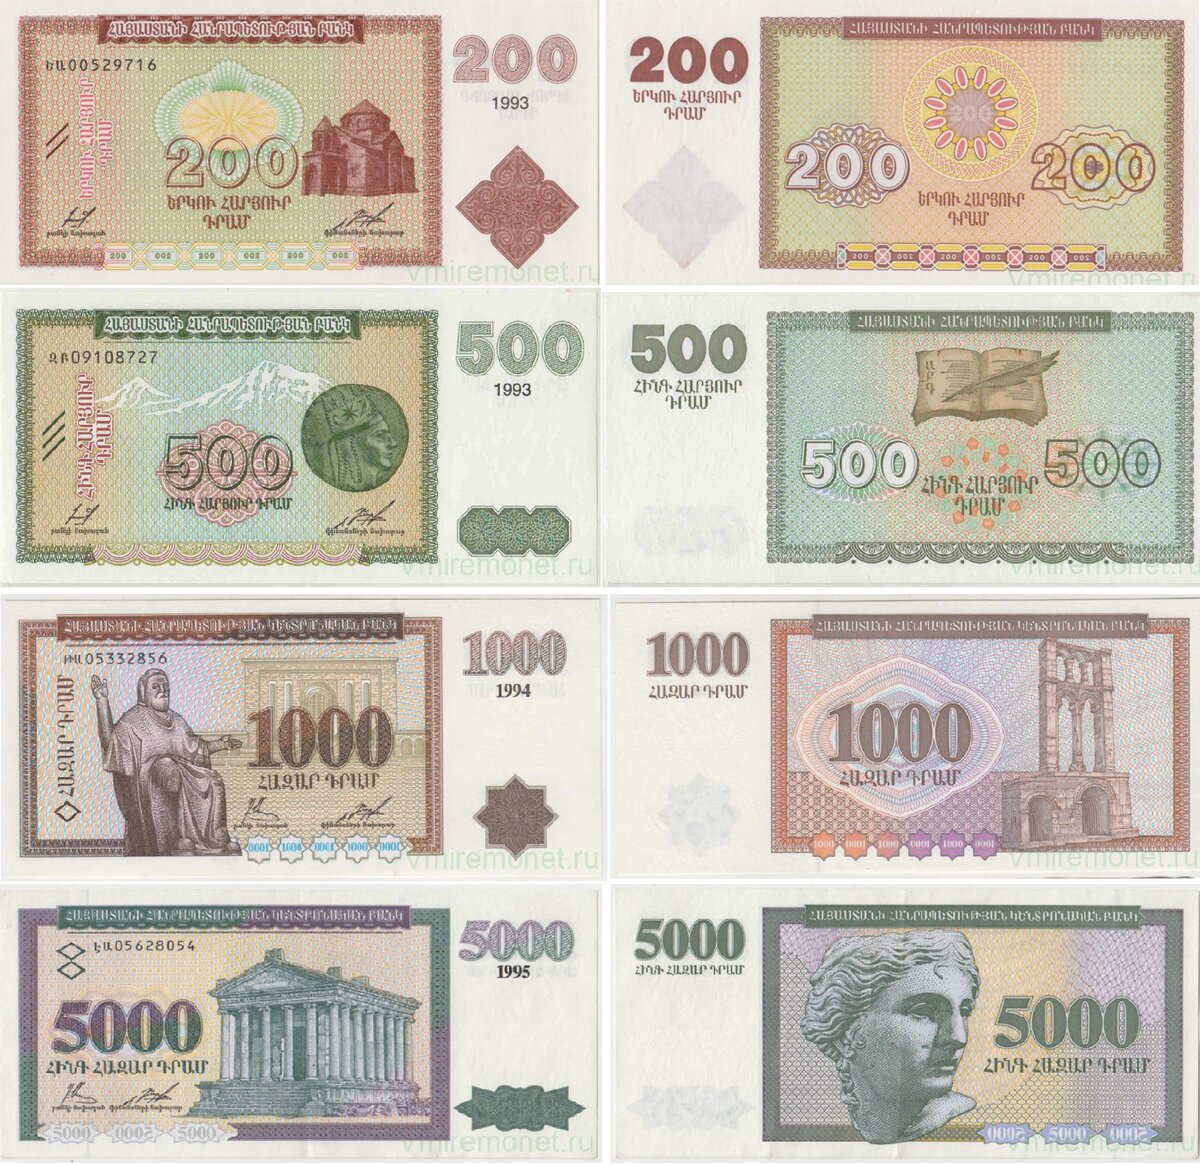 2500 драмов в рублях. Самая большая купюра в Армении. Банкноты Армении. Банкноты Армении в обращении. Драмы номиналы.